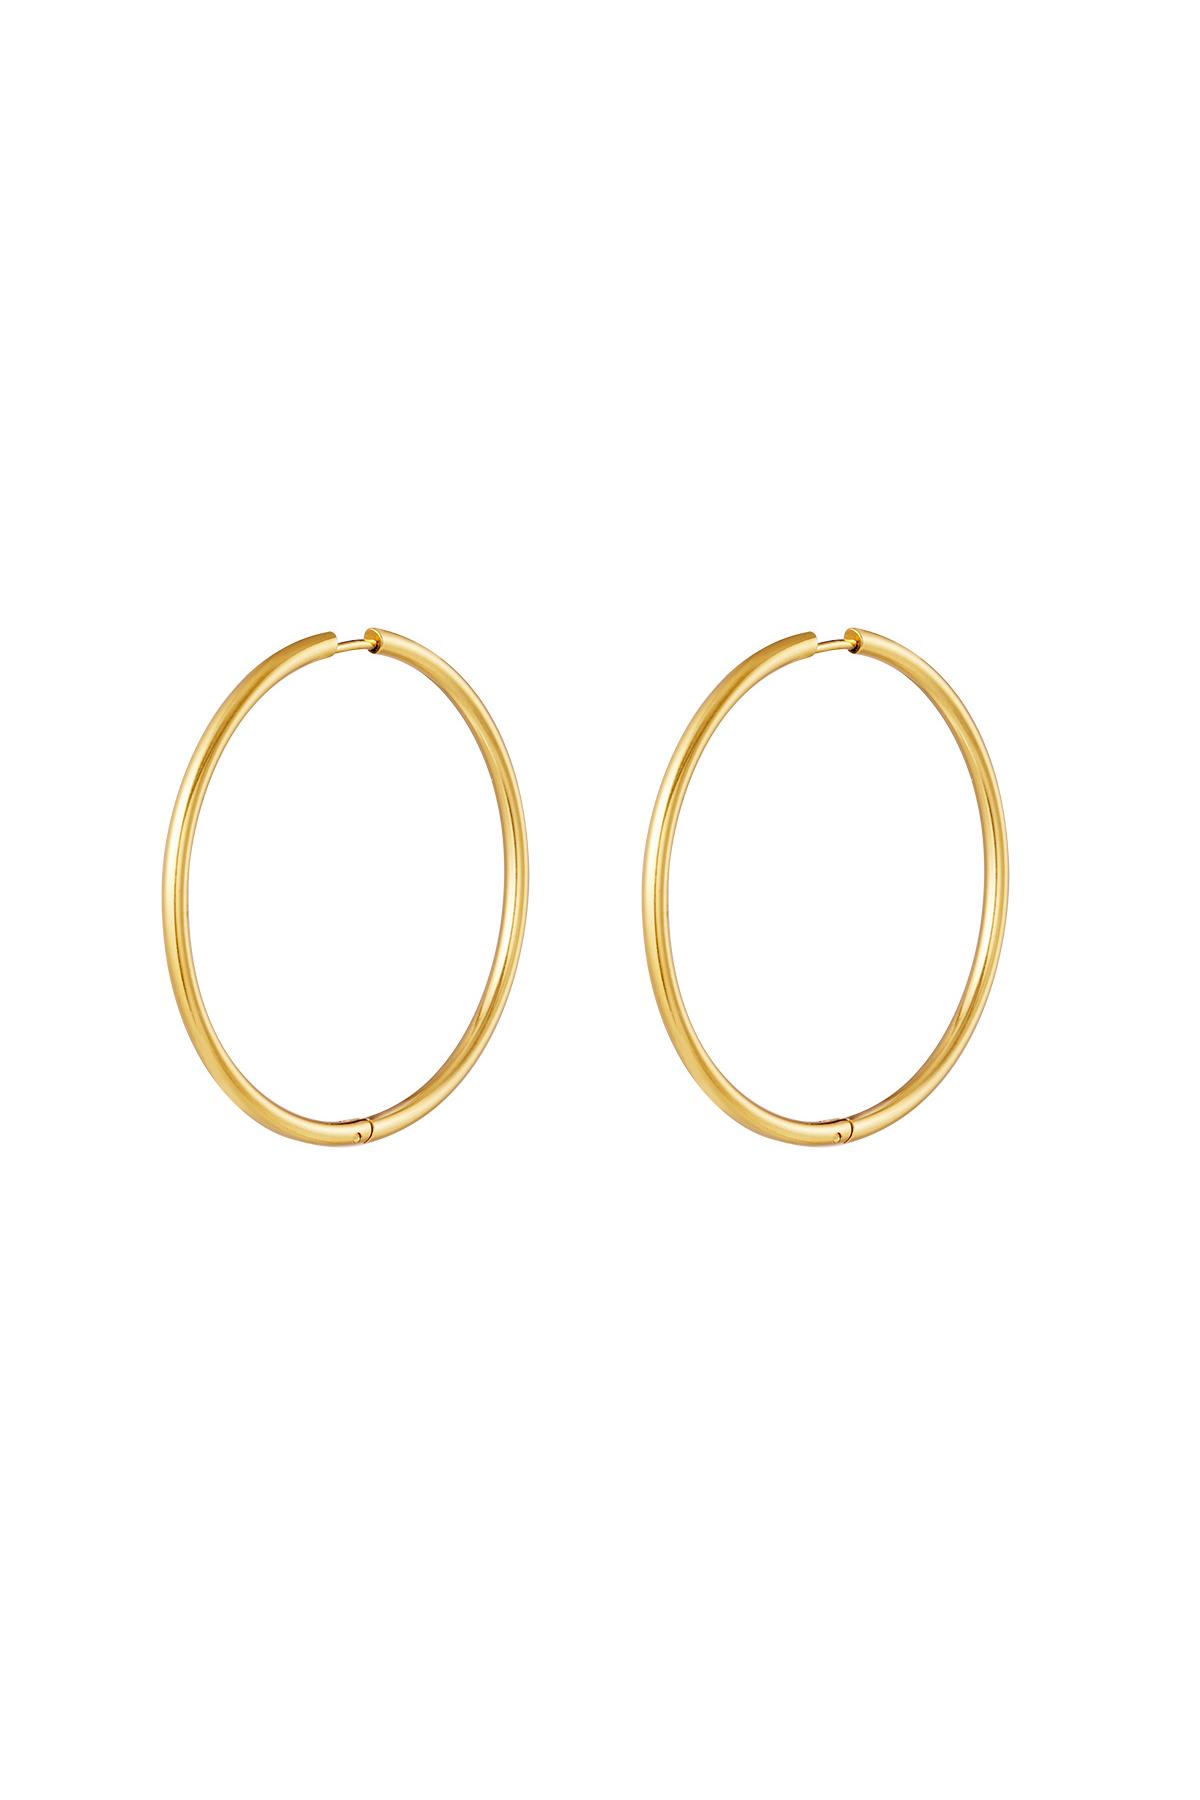 Stainless steel earrings hoops medium Gold 